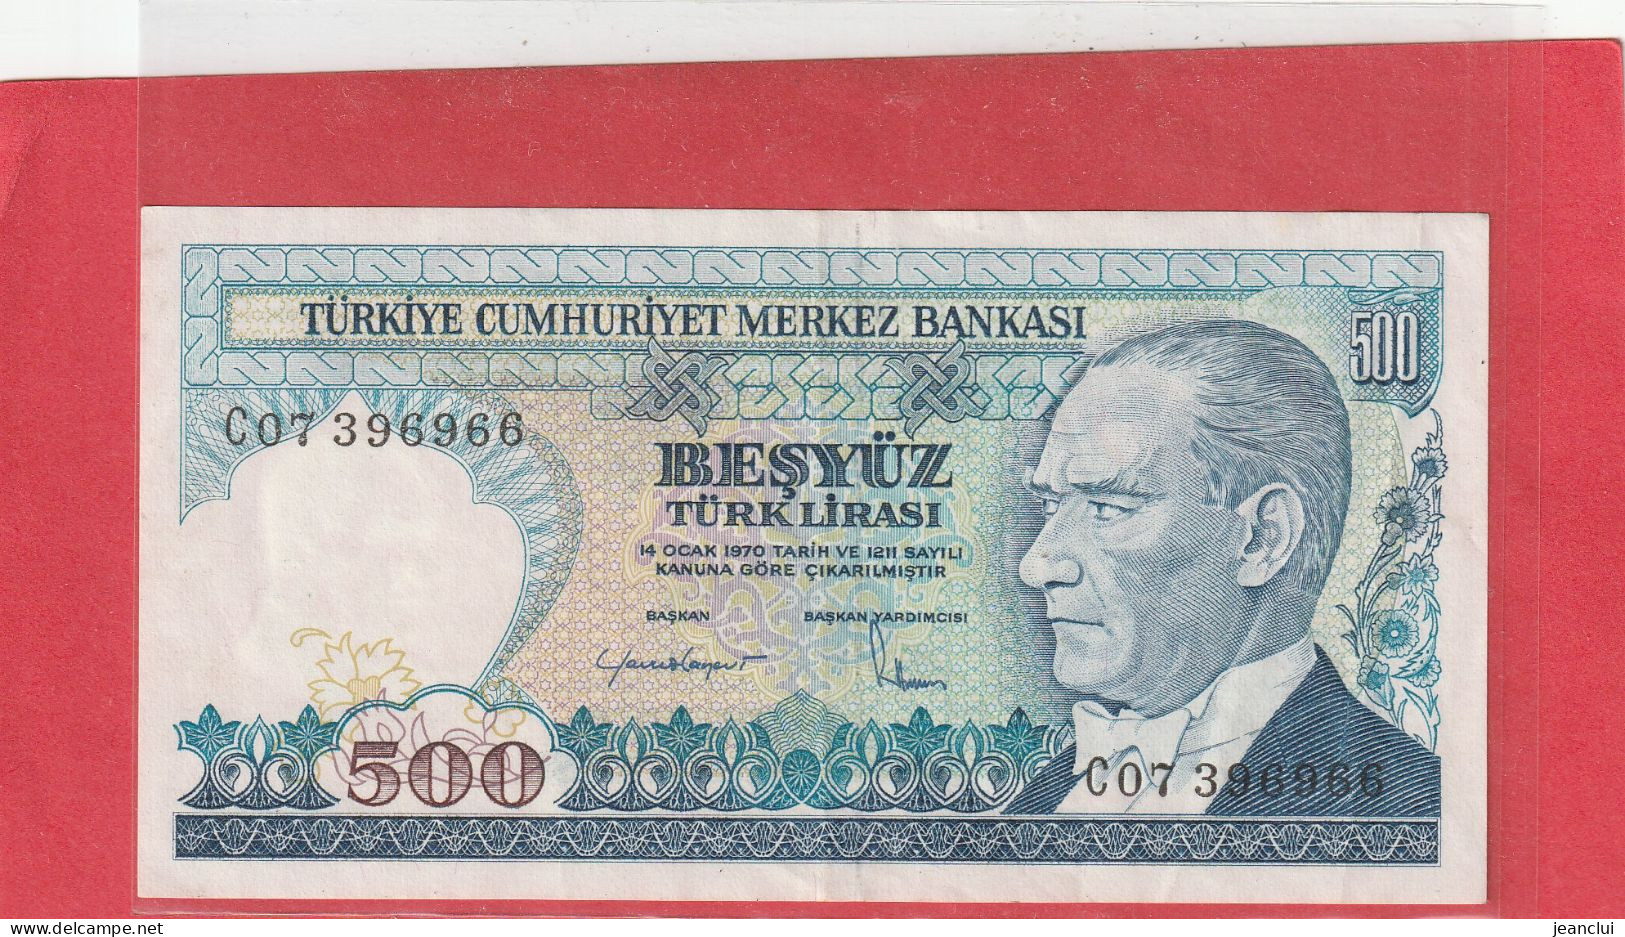 TURKIYE CUMHURIYET MERKEZ BANKASI . 500 LIRA . 14 OCAK 1970  . N°  C 07396966 .  2 SCANNES  .  BEL ETAT - Turkije